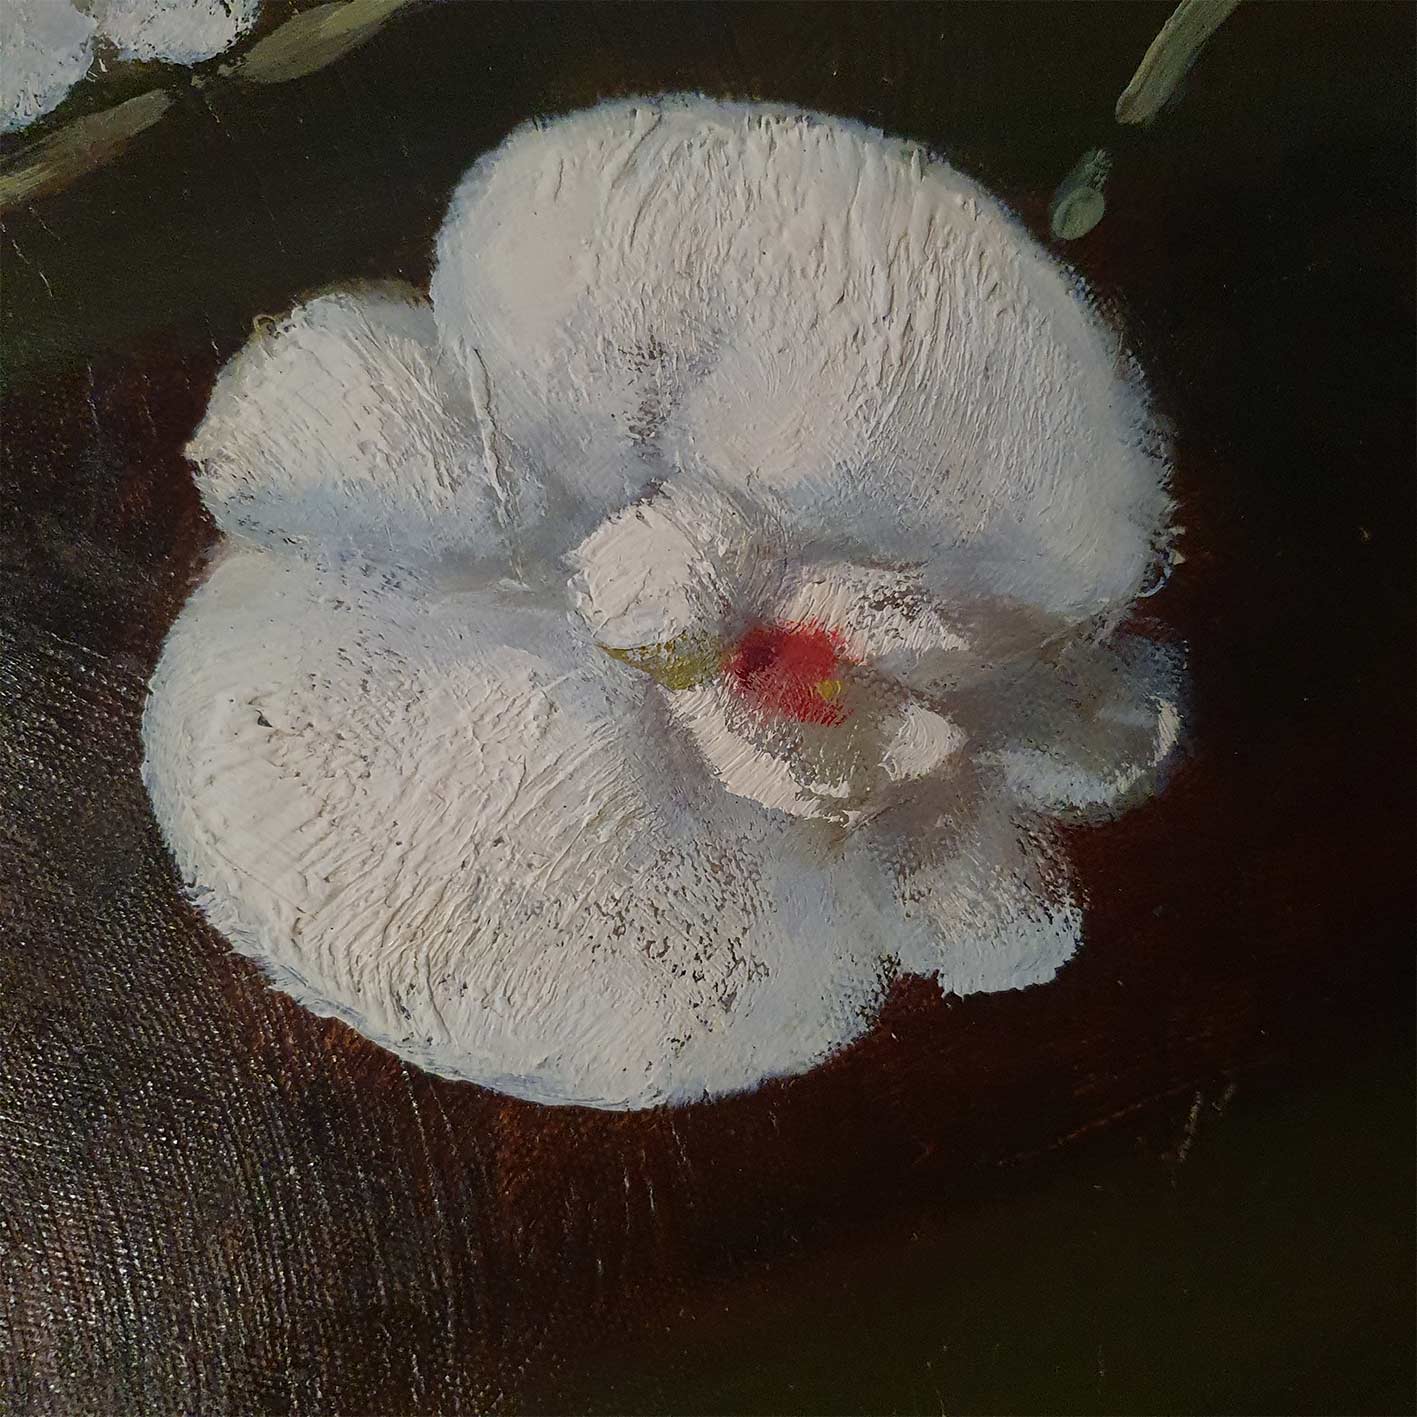 Weißes silbernes Blumengemälde 120x40 cm